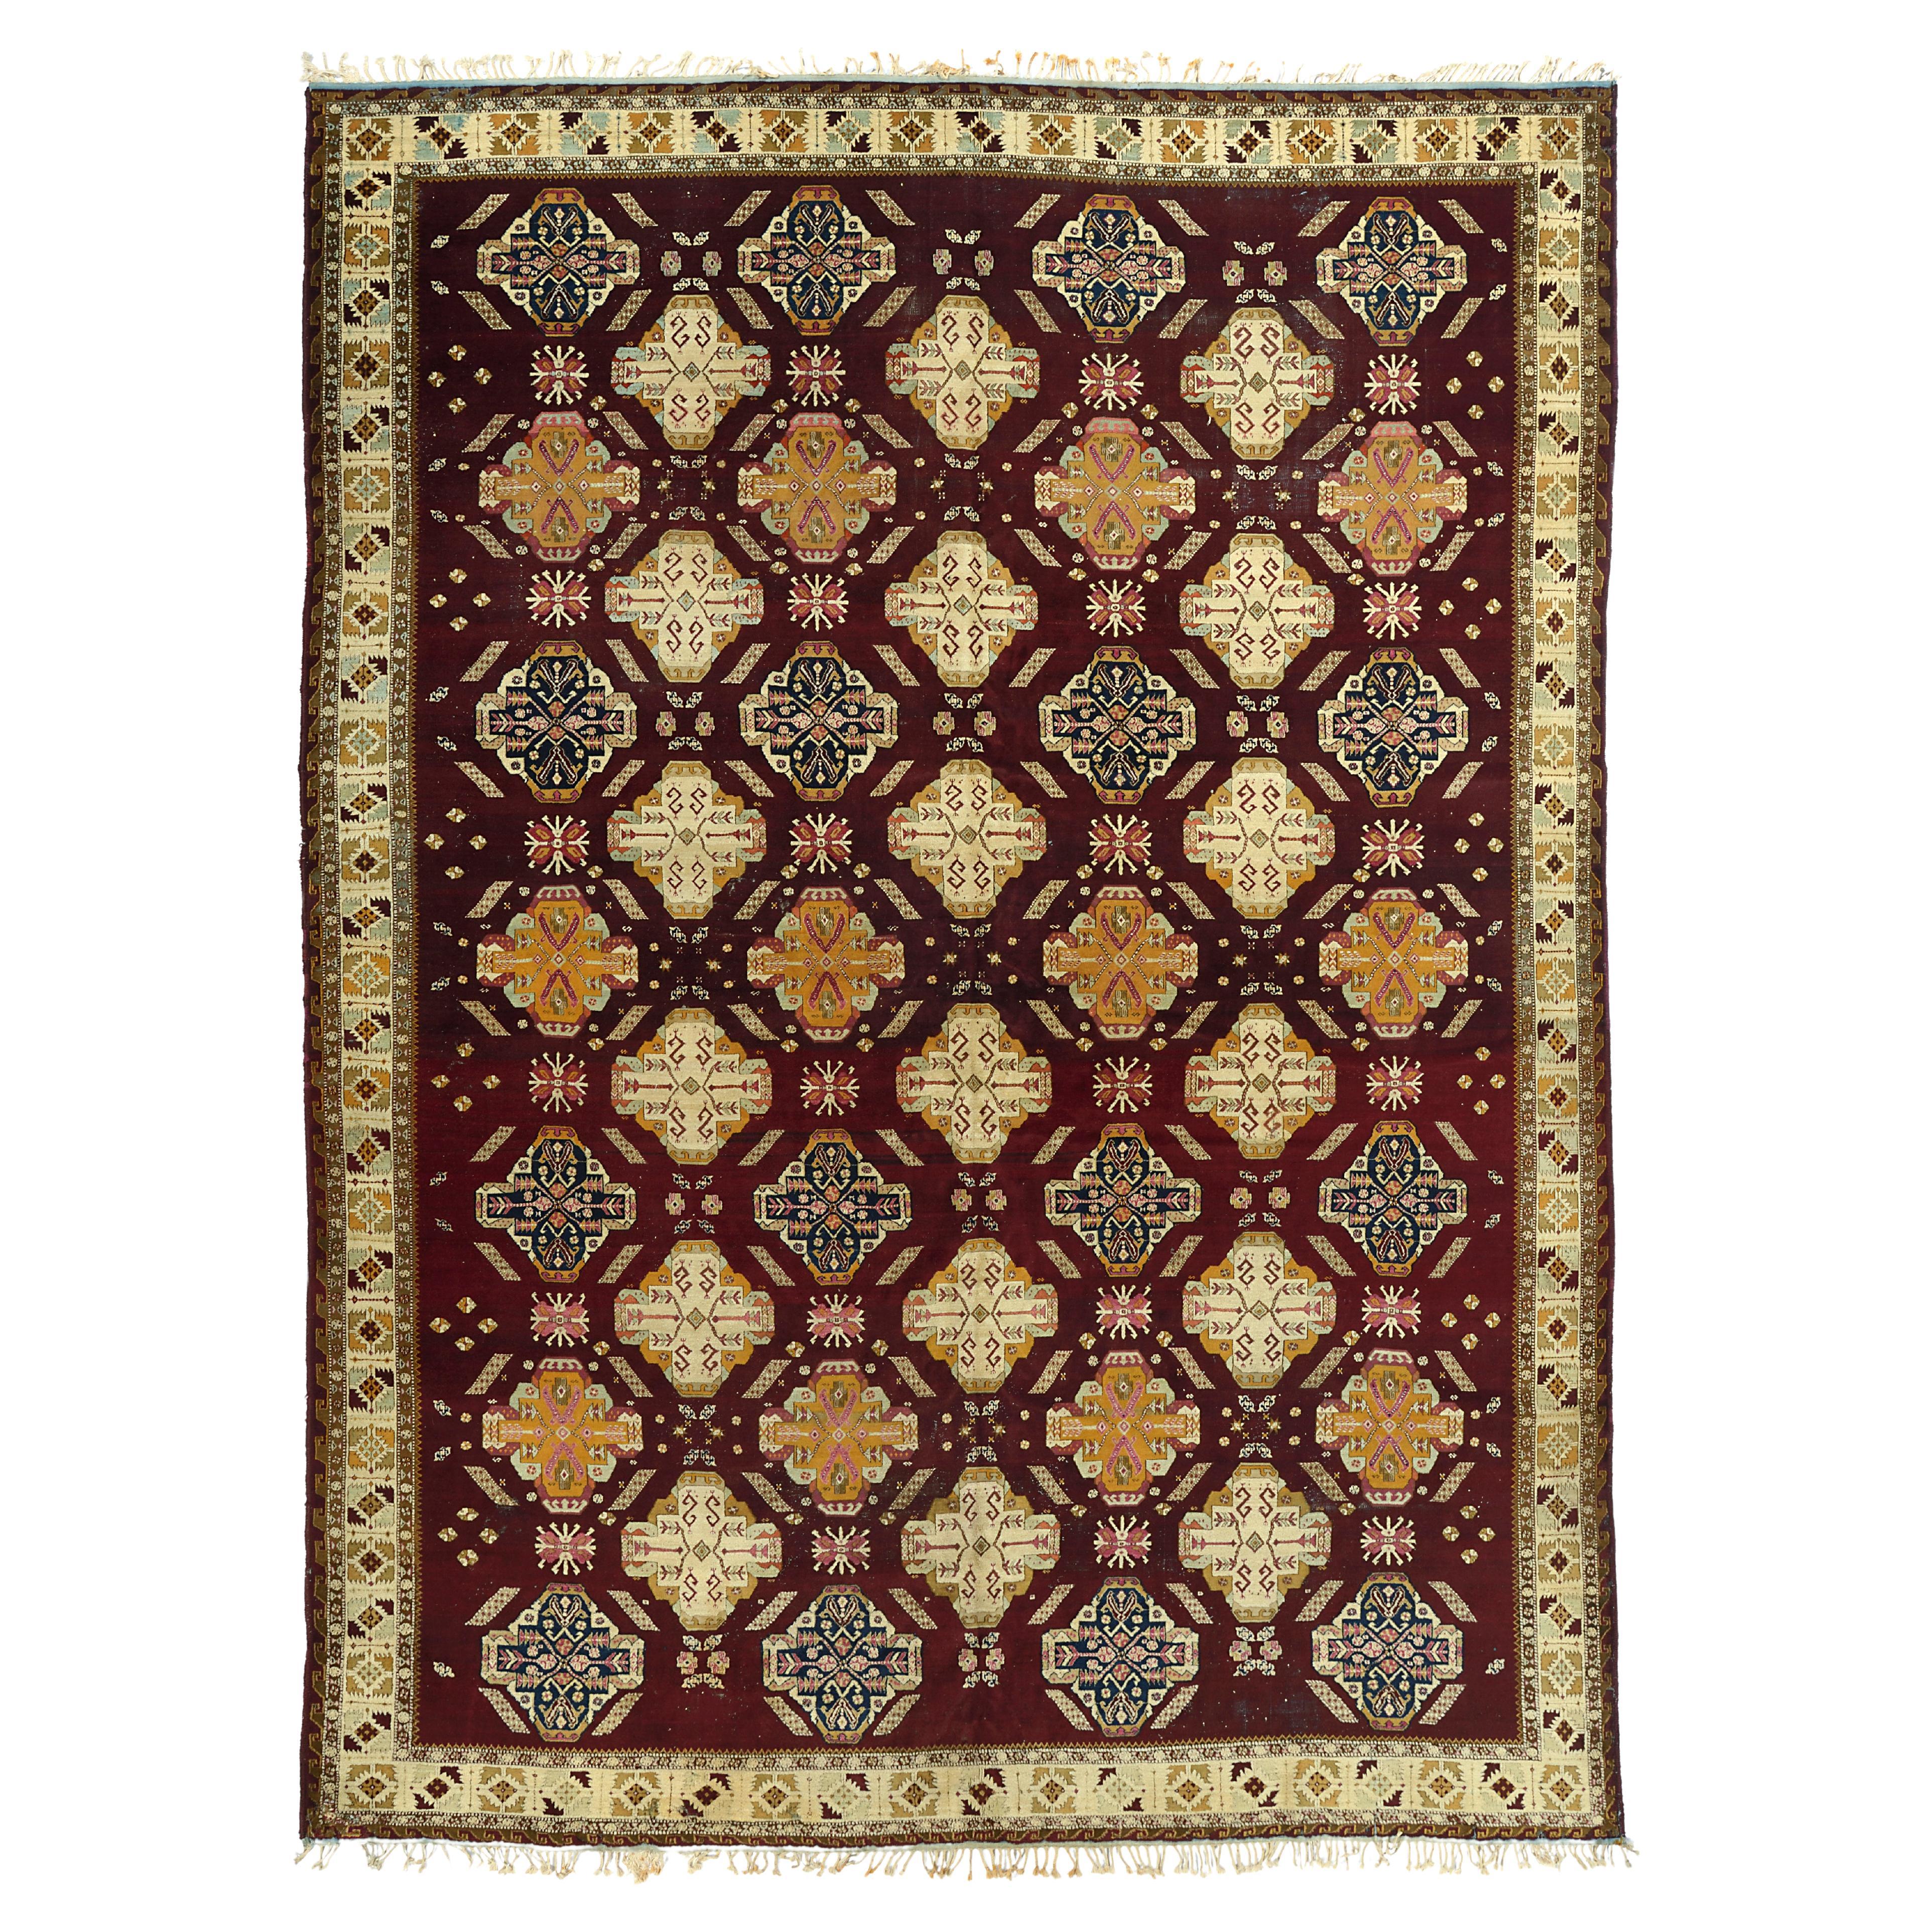 Unusual Antique Agra Carpet For Sale